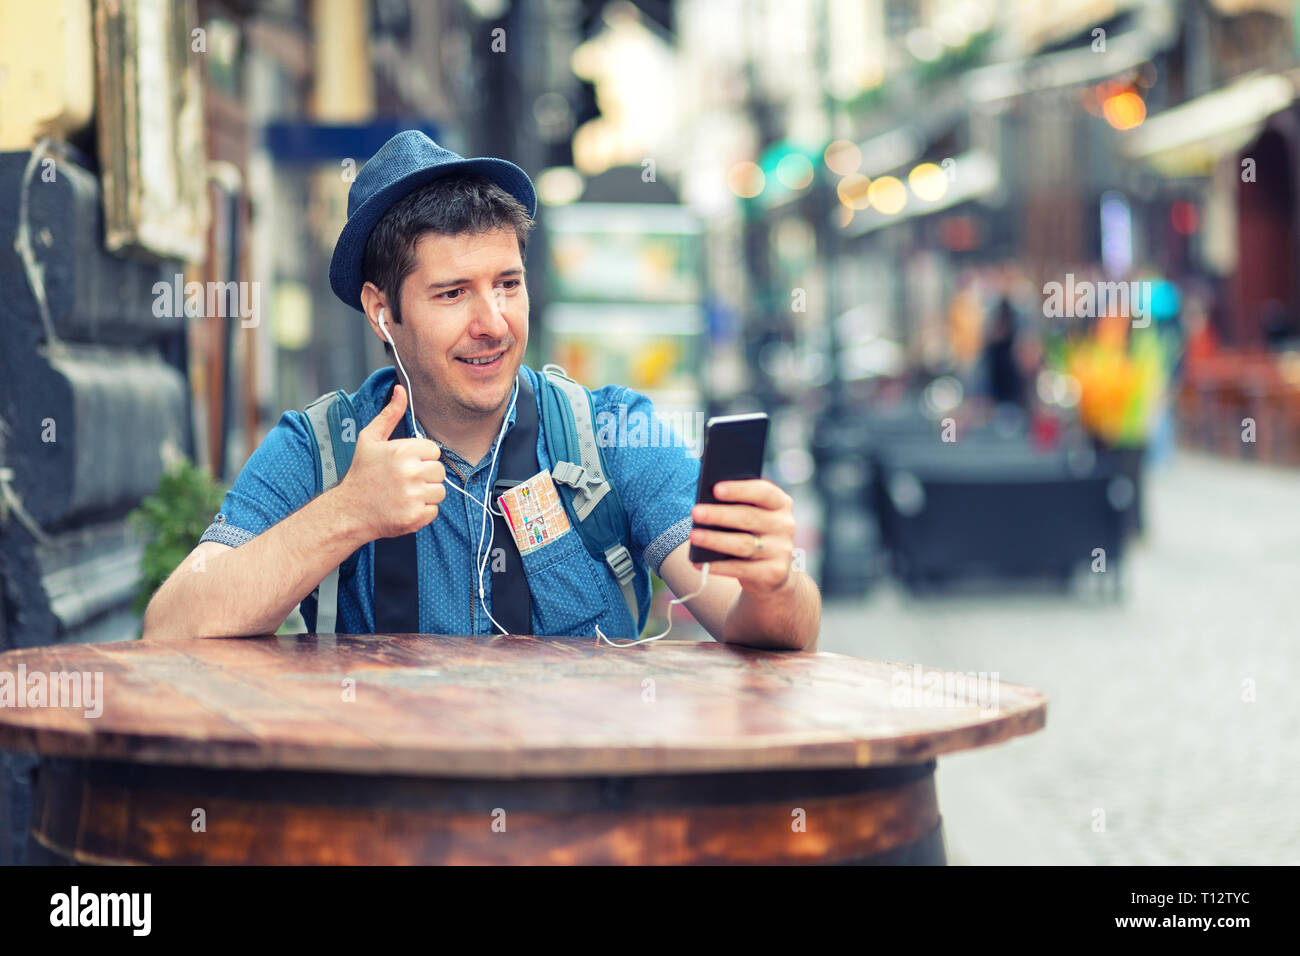 Reisende mit trendigen Look in einer Videokonferenz mit Daumen hoch, während die Erkundung Straßen der großen Städte - Junger Mann genießen City vibes Stockfoto